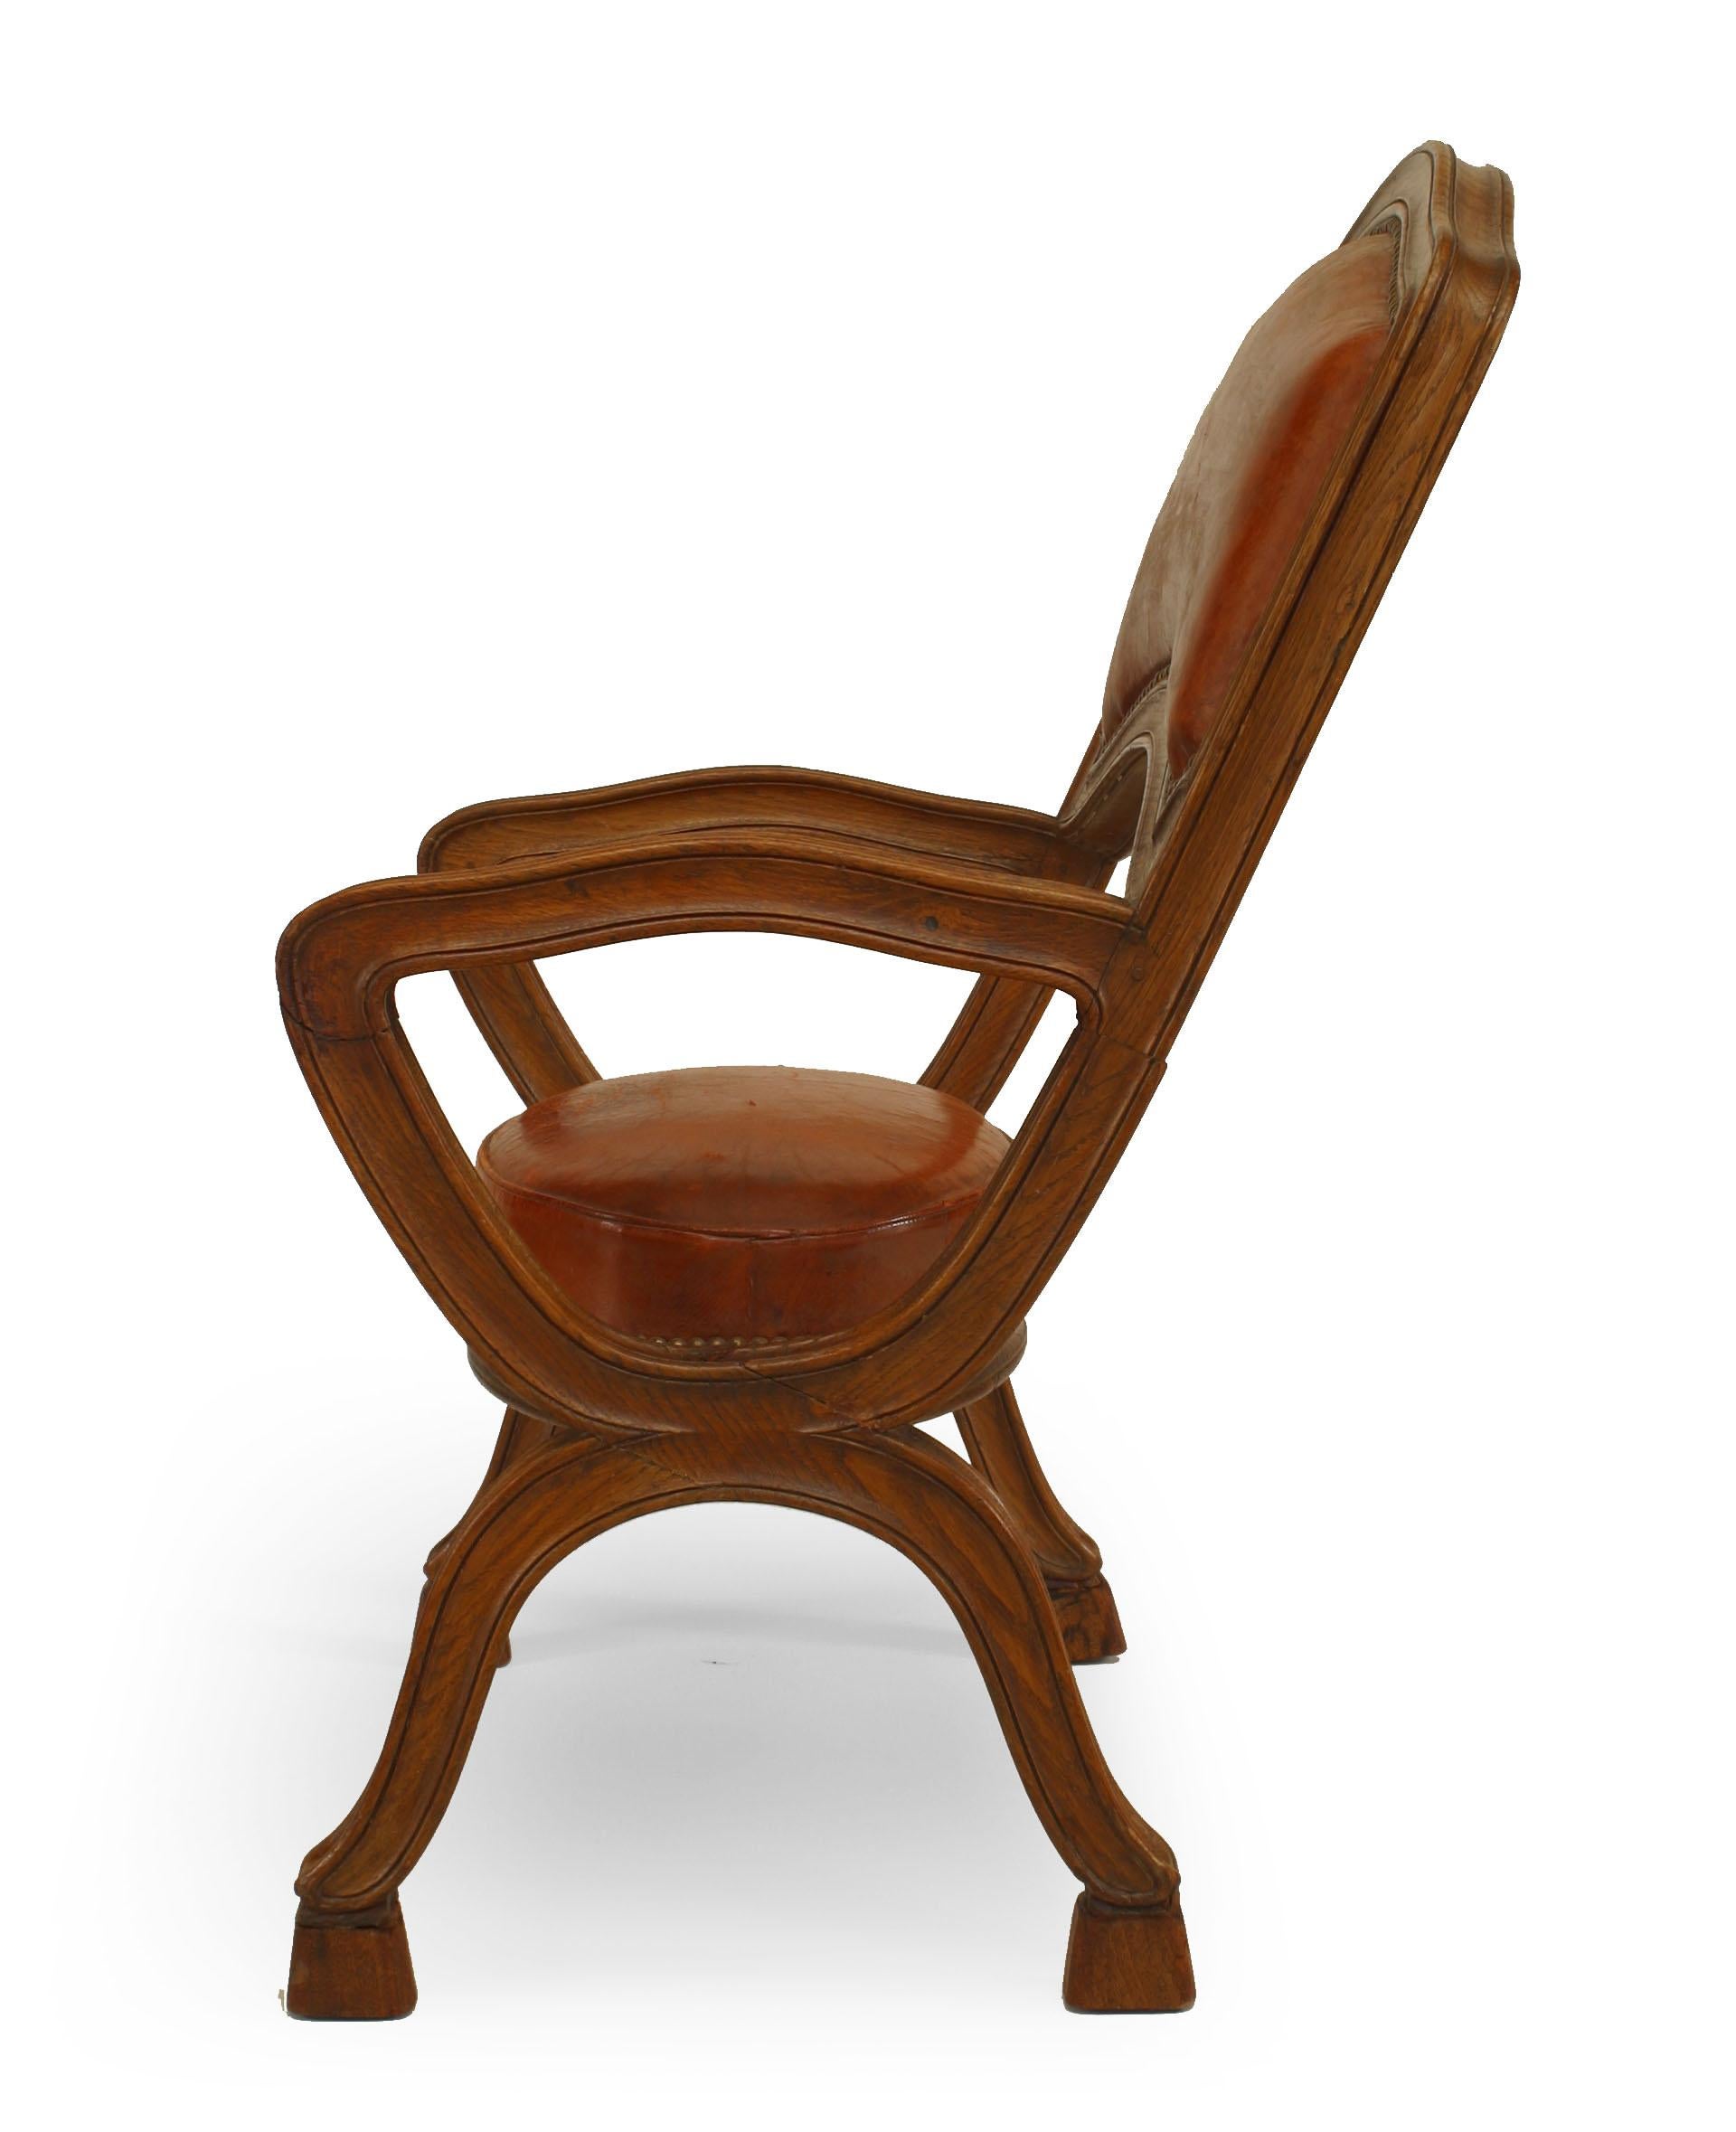 Ensemble de 4 chaises à accoudoirs en chêne de style provincial français (19e siècle), avec des pieds en forme de 